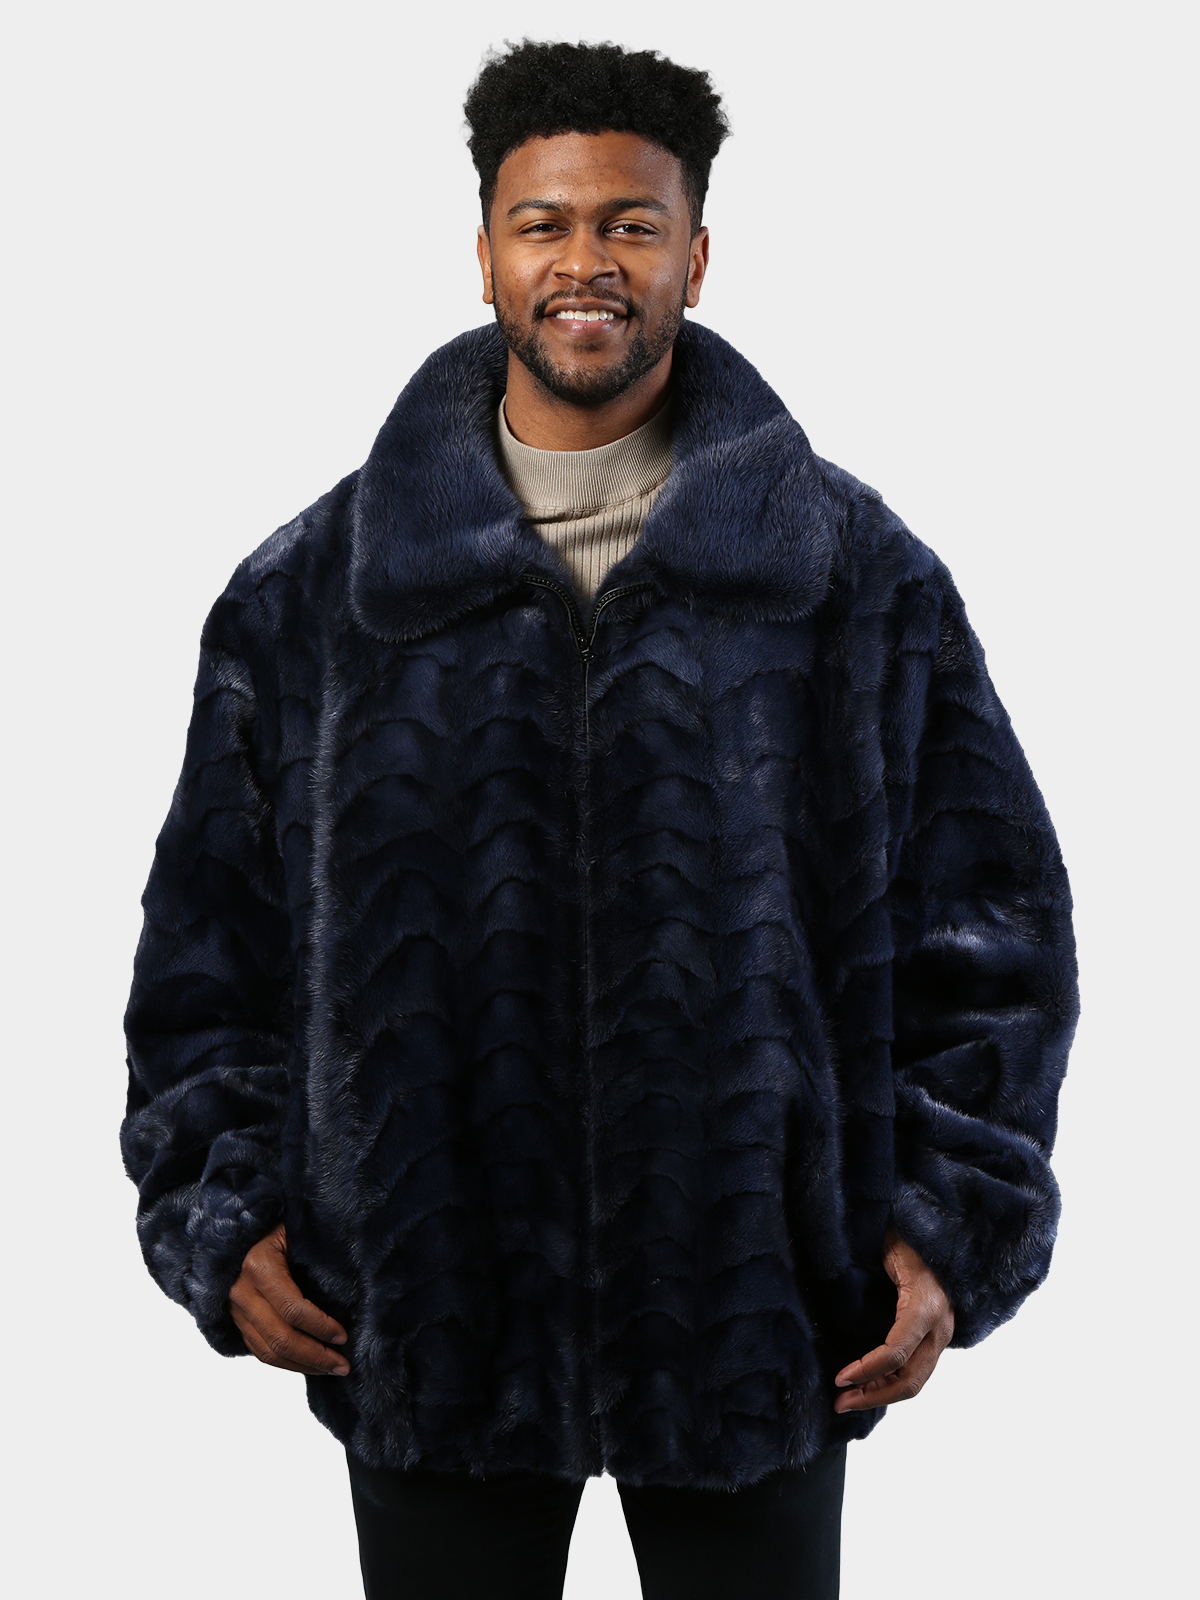 wofeydo Winter Coats for Men, Lapel Vintage Thicken Faux-Fur' Jackets,  Winter Plus Size Padded Collar Sheepskin Coat, Men's Hoodies Sweatshirts,  Winter Jackets for Men Black L - Walmart.com